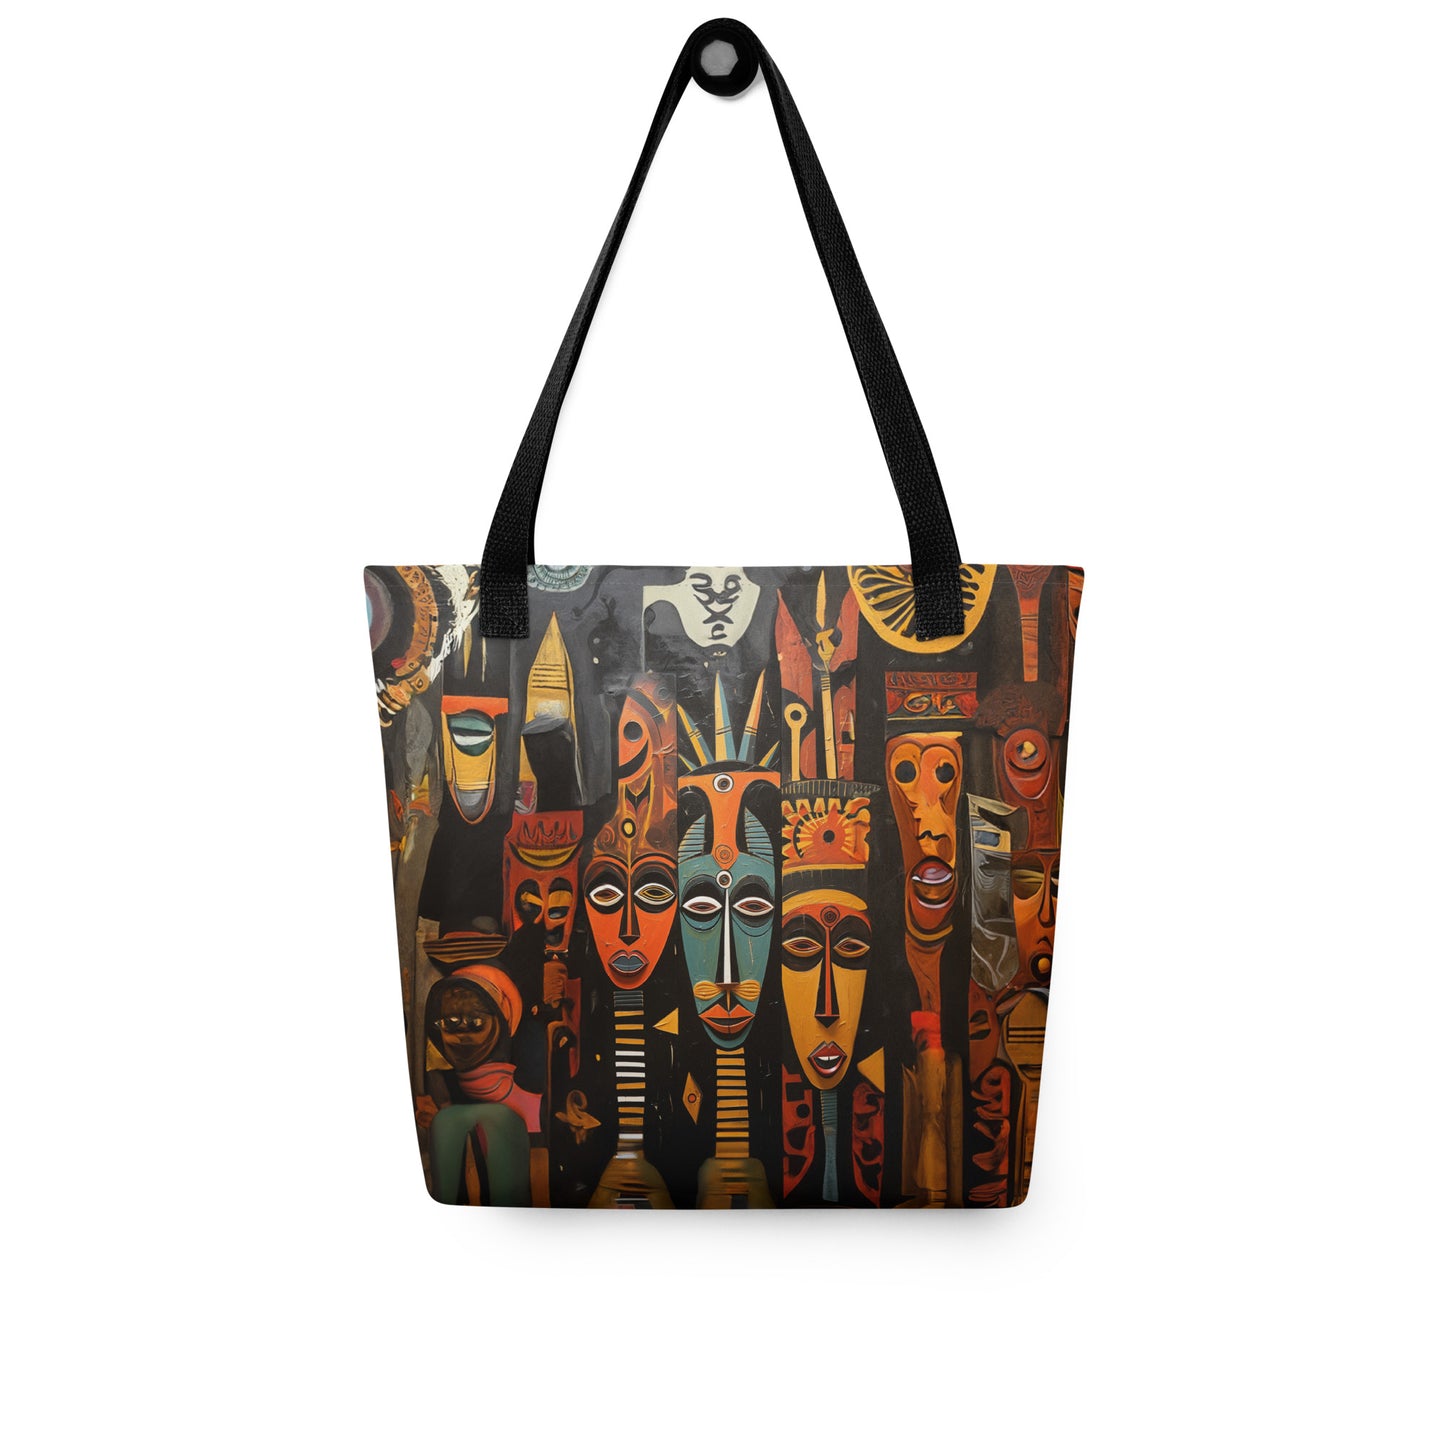 AFRIKA ART - Tote bag